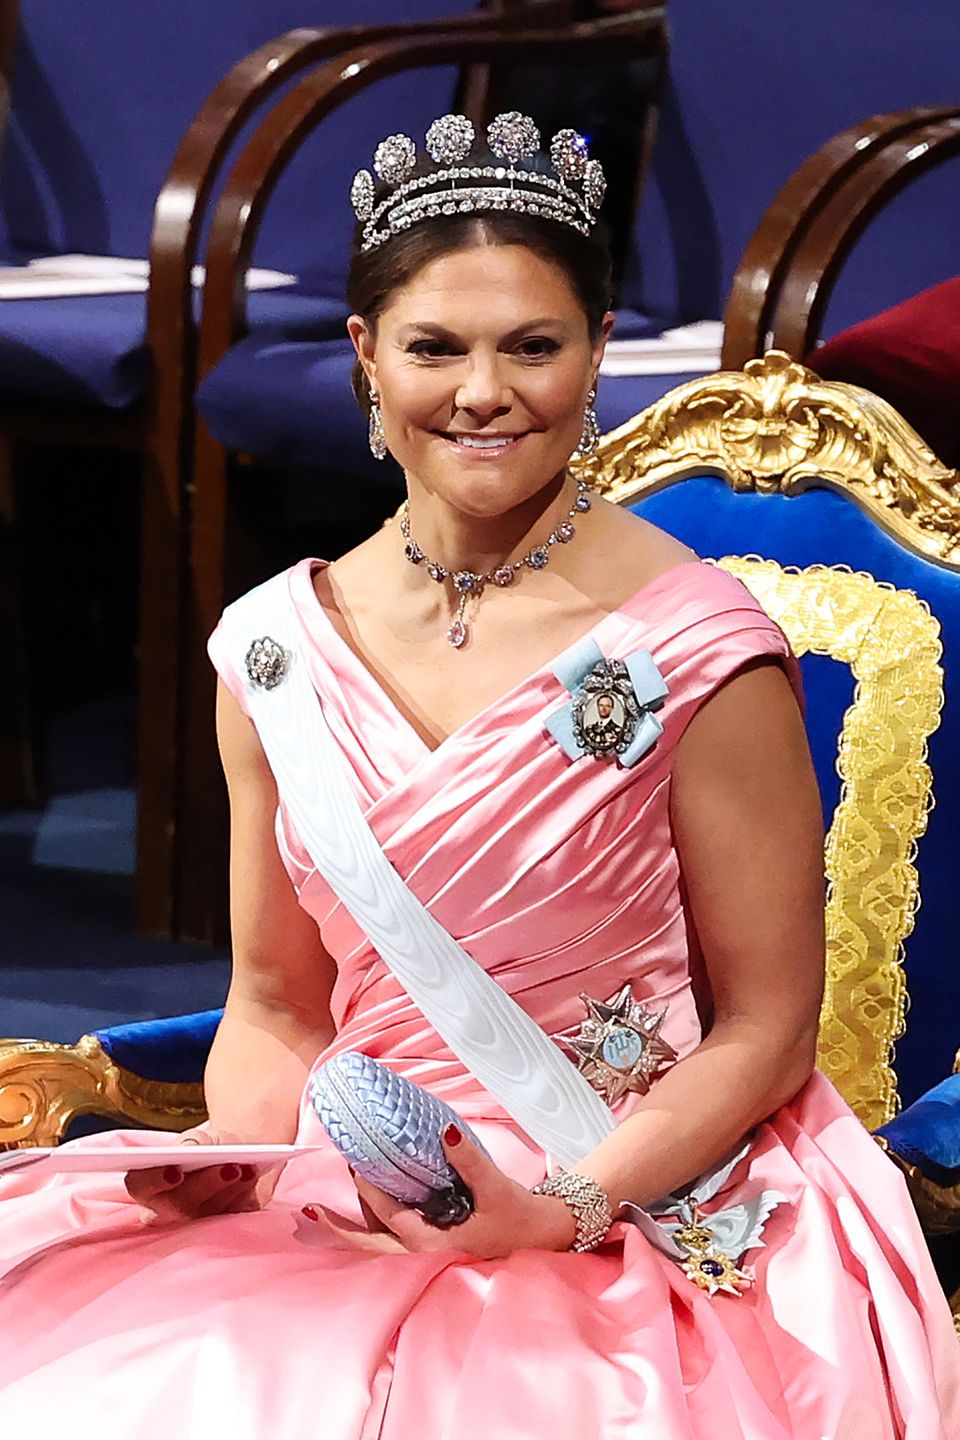 Zum rosafarbenen Ballkleid trägt die lächelnde Kronprinzessin das funkelnde Sechs-Knöpfe-Diadem, eines der wertvollsten Schmuckstücke der Schweden-Royals.